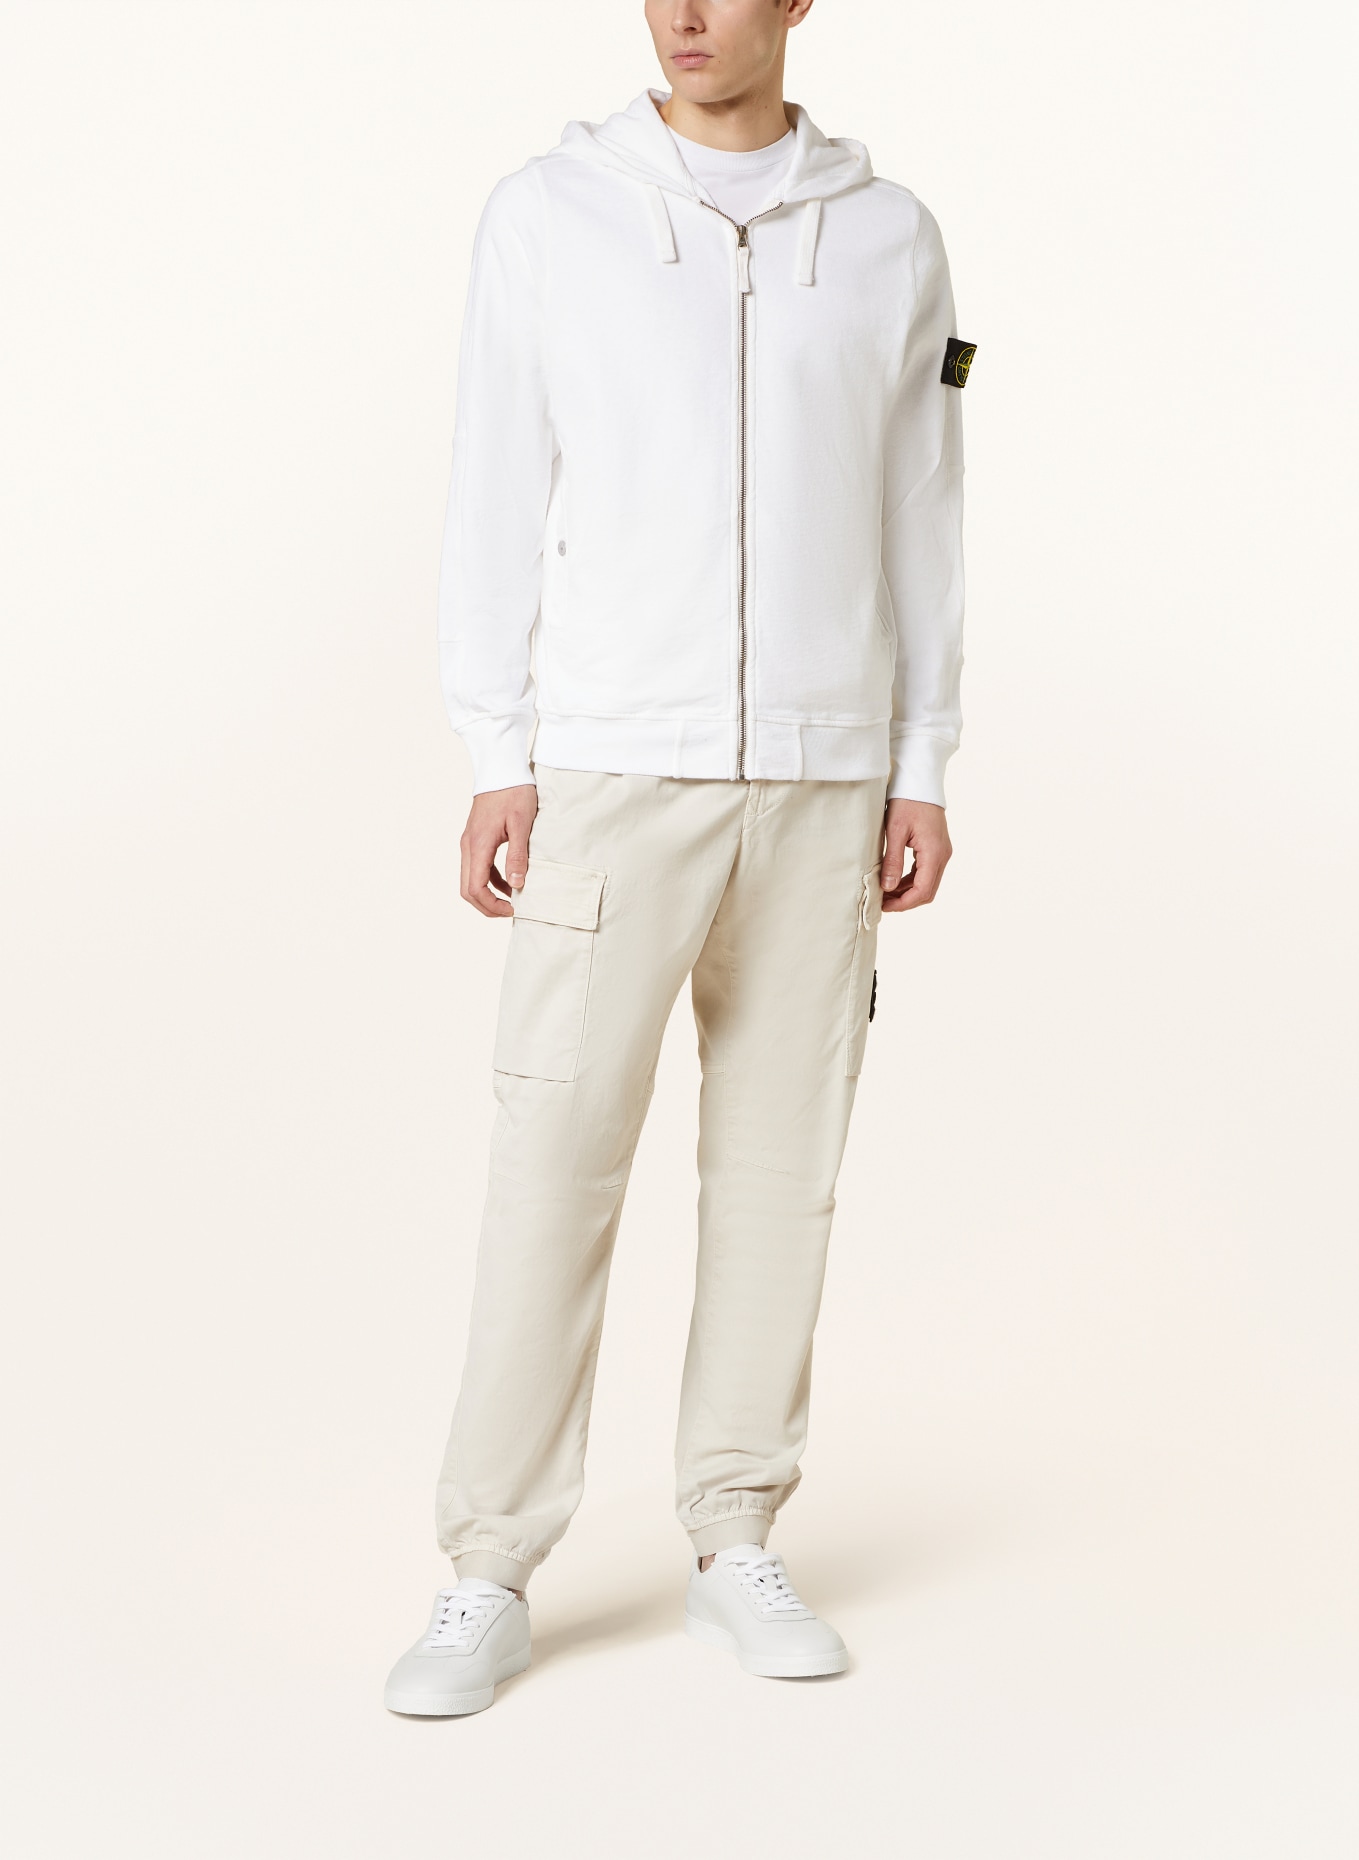 STONE ISLAND Sweat jacket, Color: WHITE (Image 2)